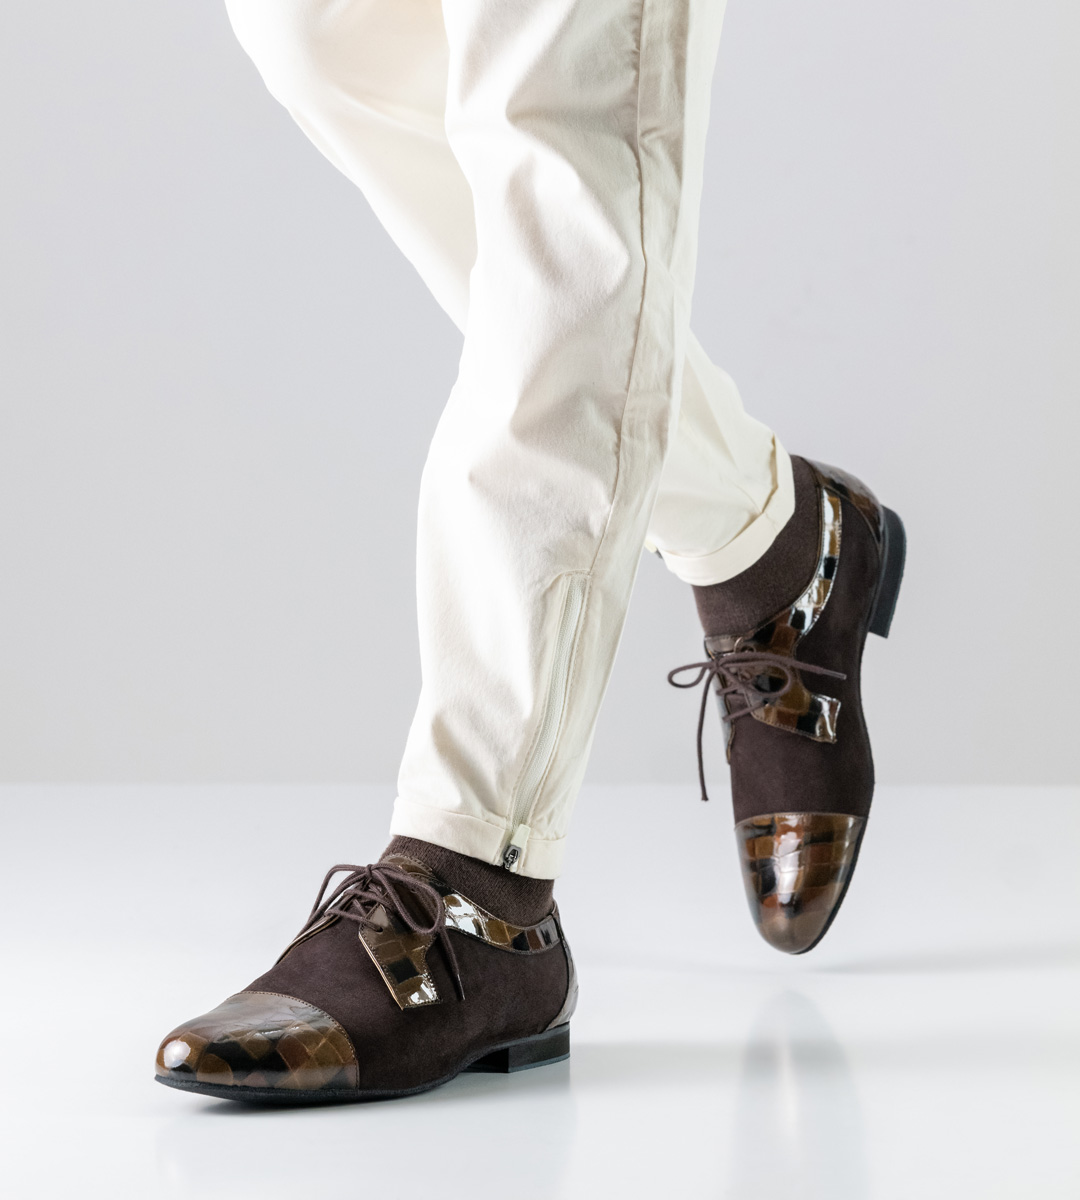 Chaussures de danse pour hommes marron de Werner Kern avec micro talon de 1,5 cm de haut